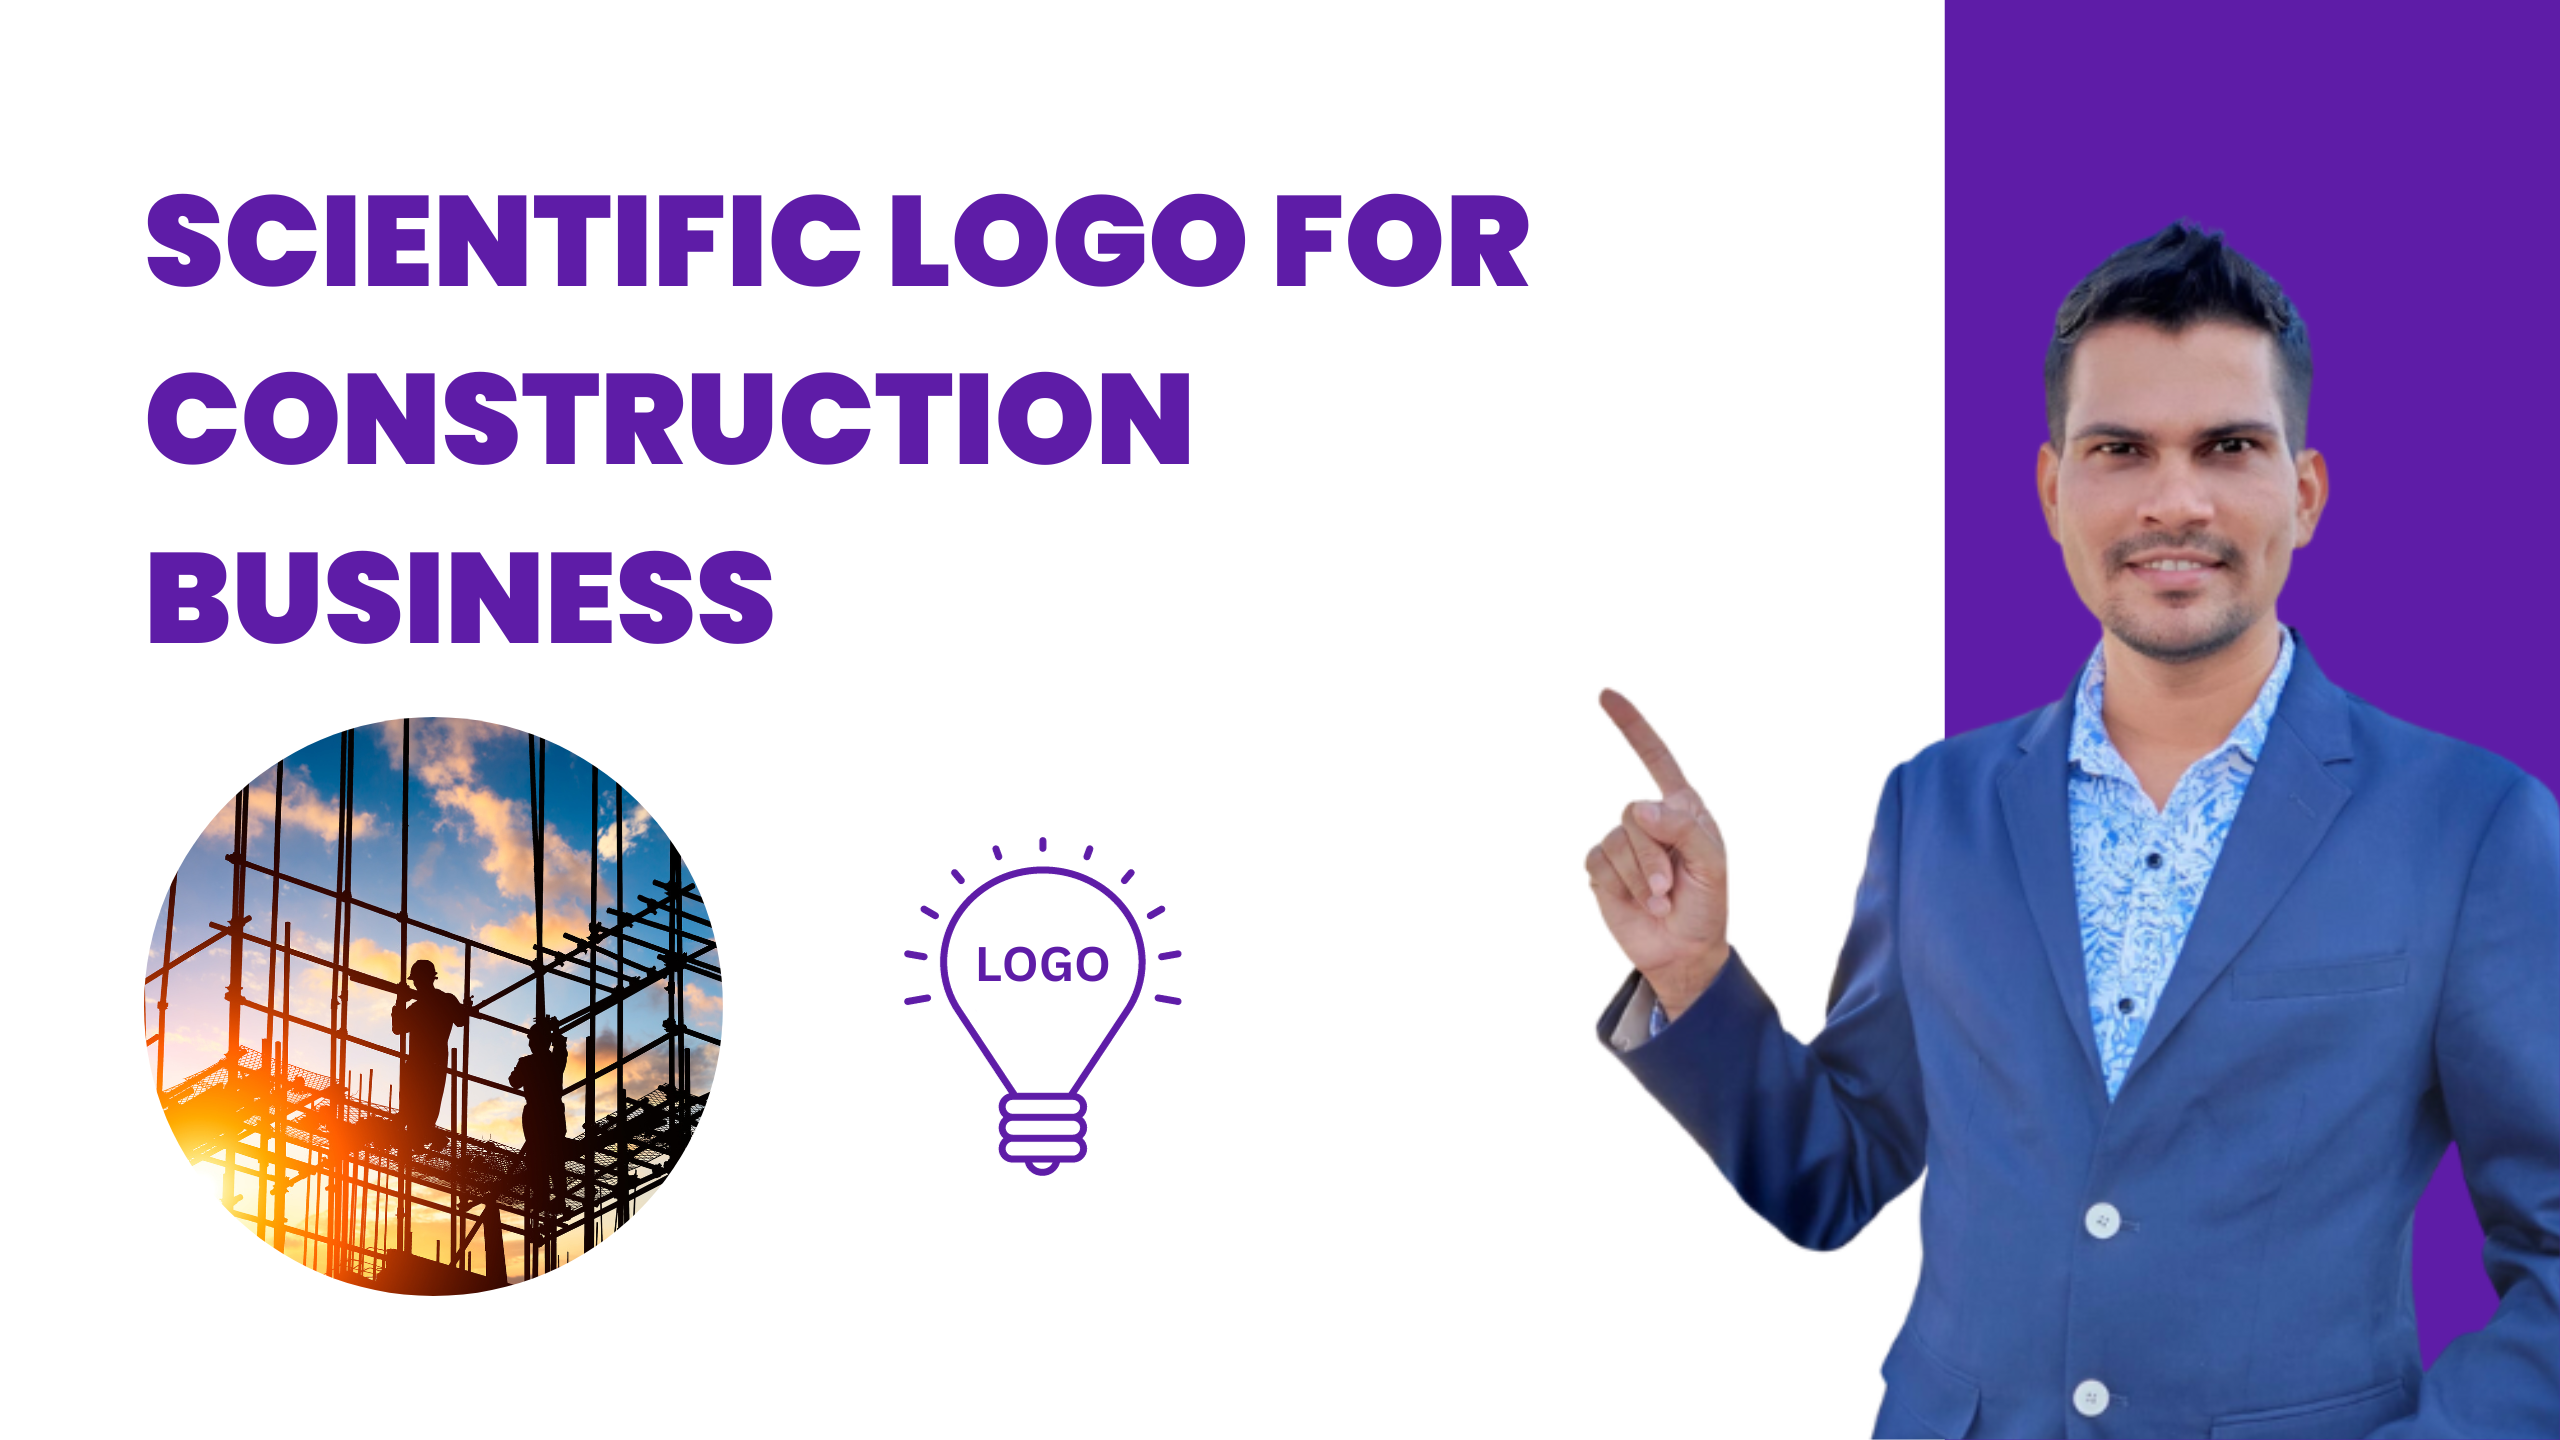 Construction Business,scientific logo, Subhash&#8217;s Mastery of Scientific Logo for Construction Business, Scientific Logo by Subhash